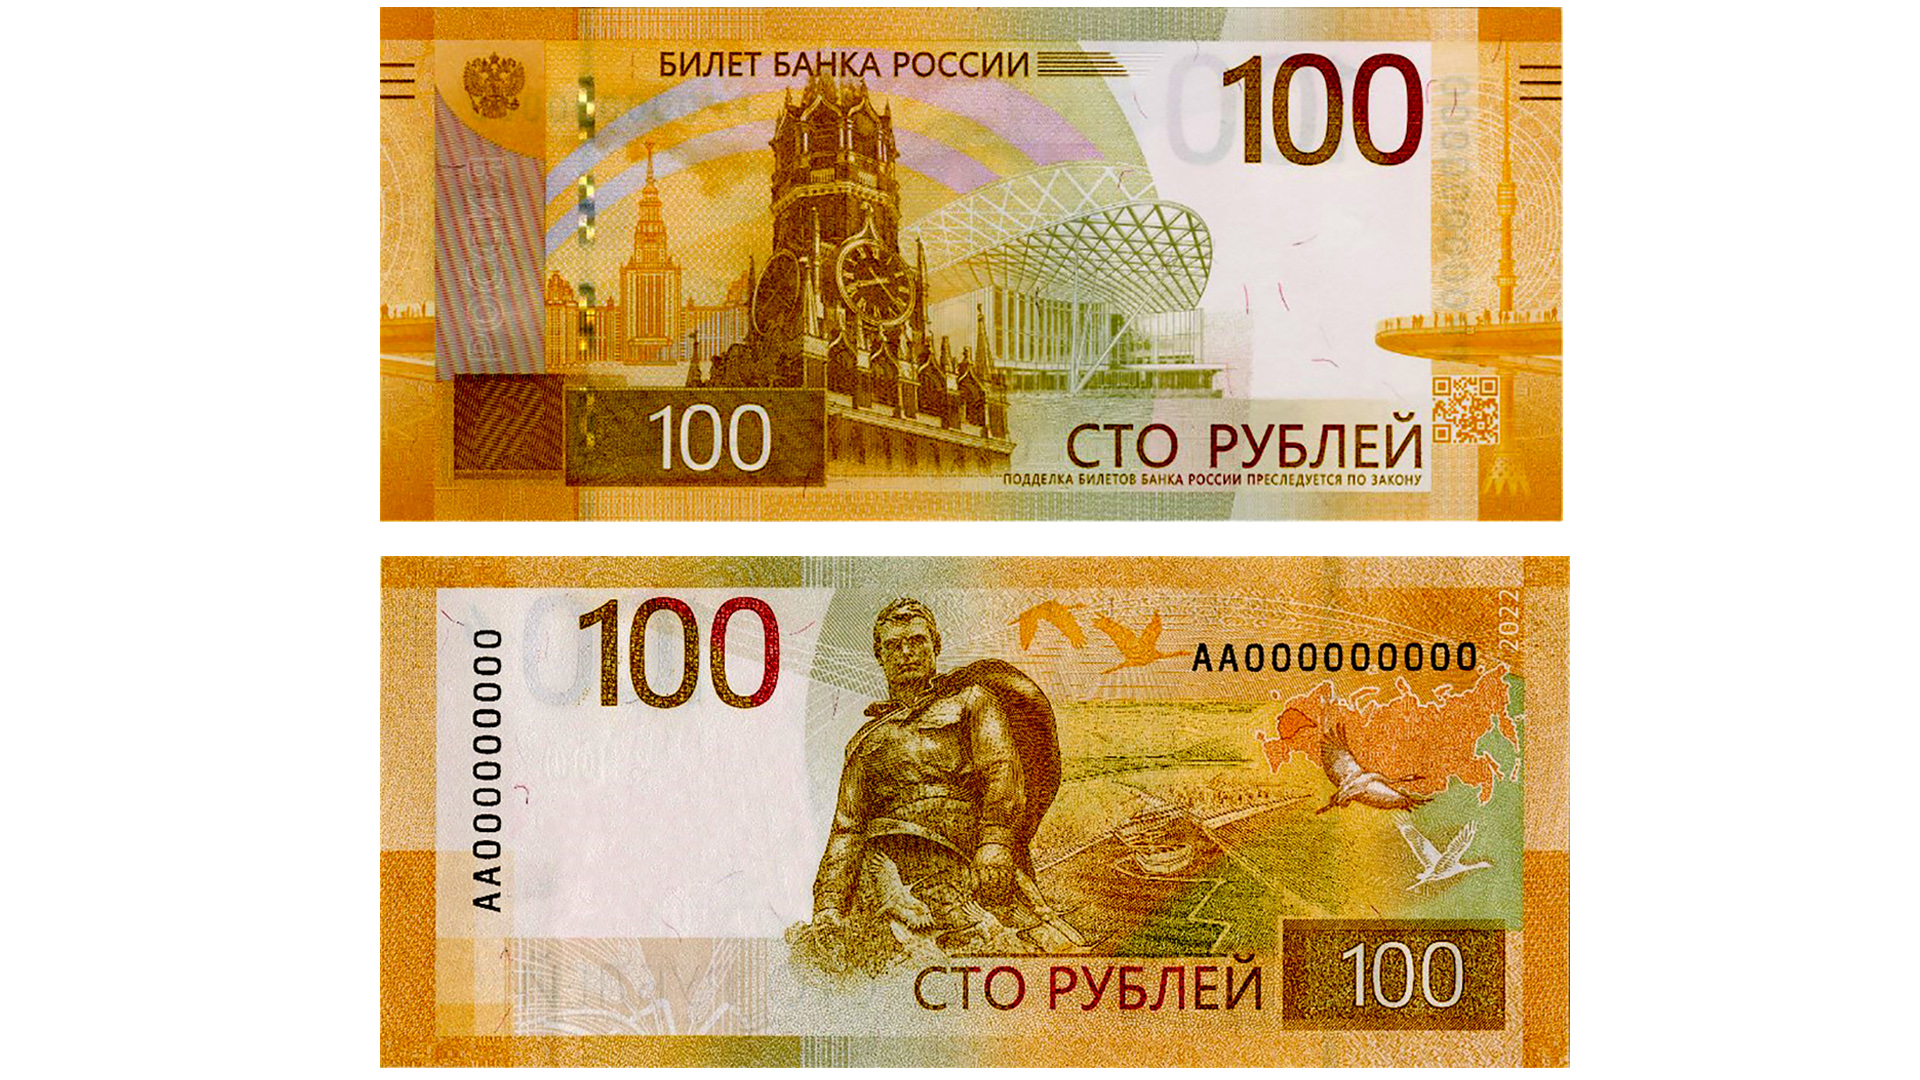 Банк России выпускает обновленную банкноту 100 рублей.